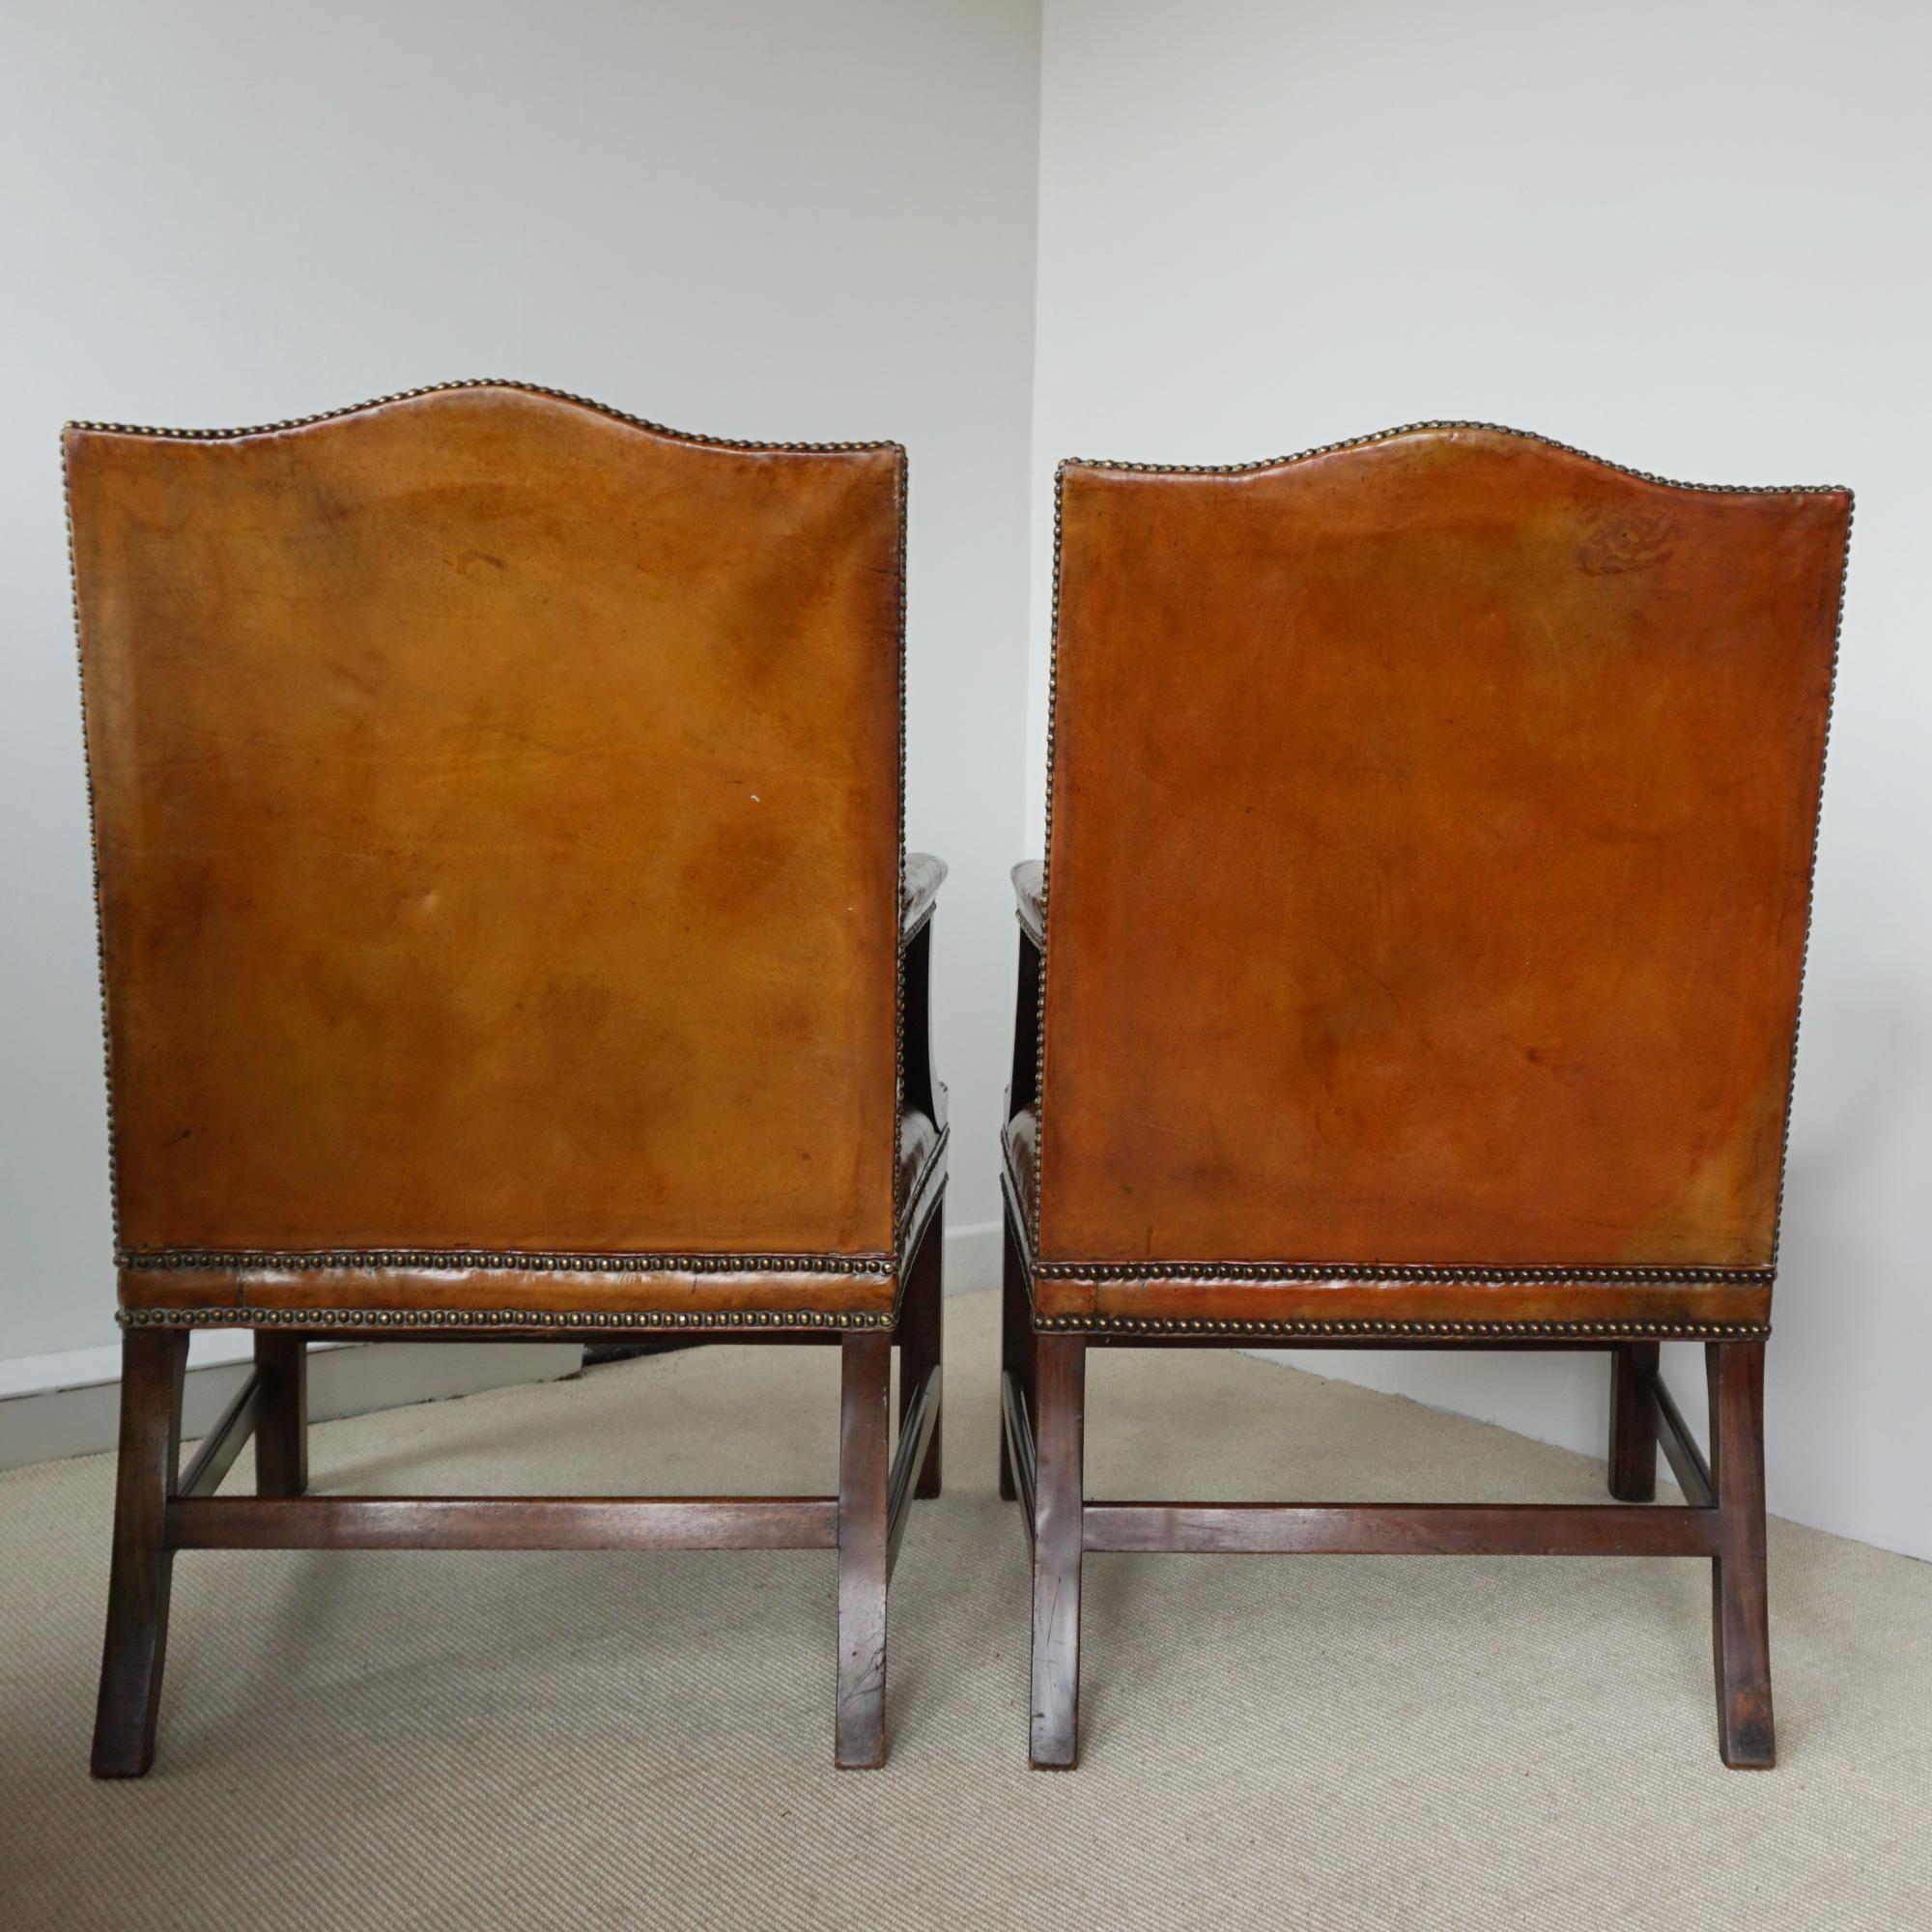 Paire de chaises de bibliothèque Gainsborough de style George III. Revêtement en cuir marron vintage. Accoudoirs et pieds en noyer massif. 

